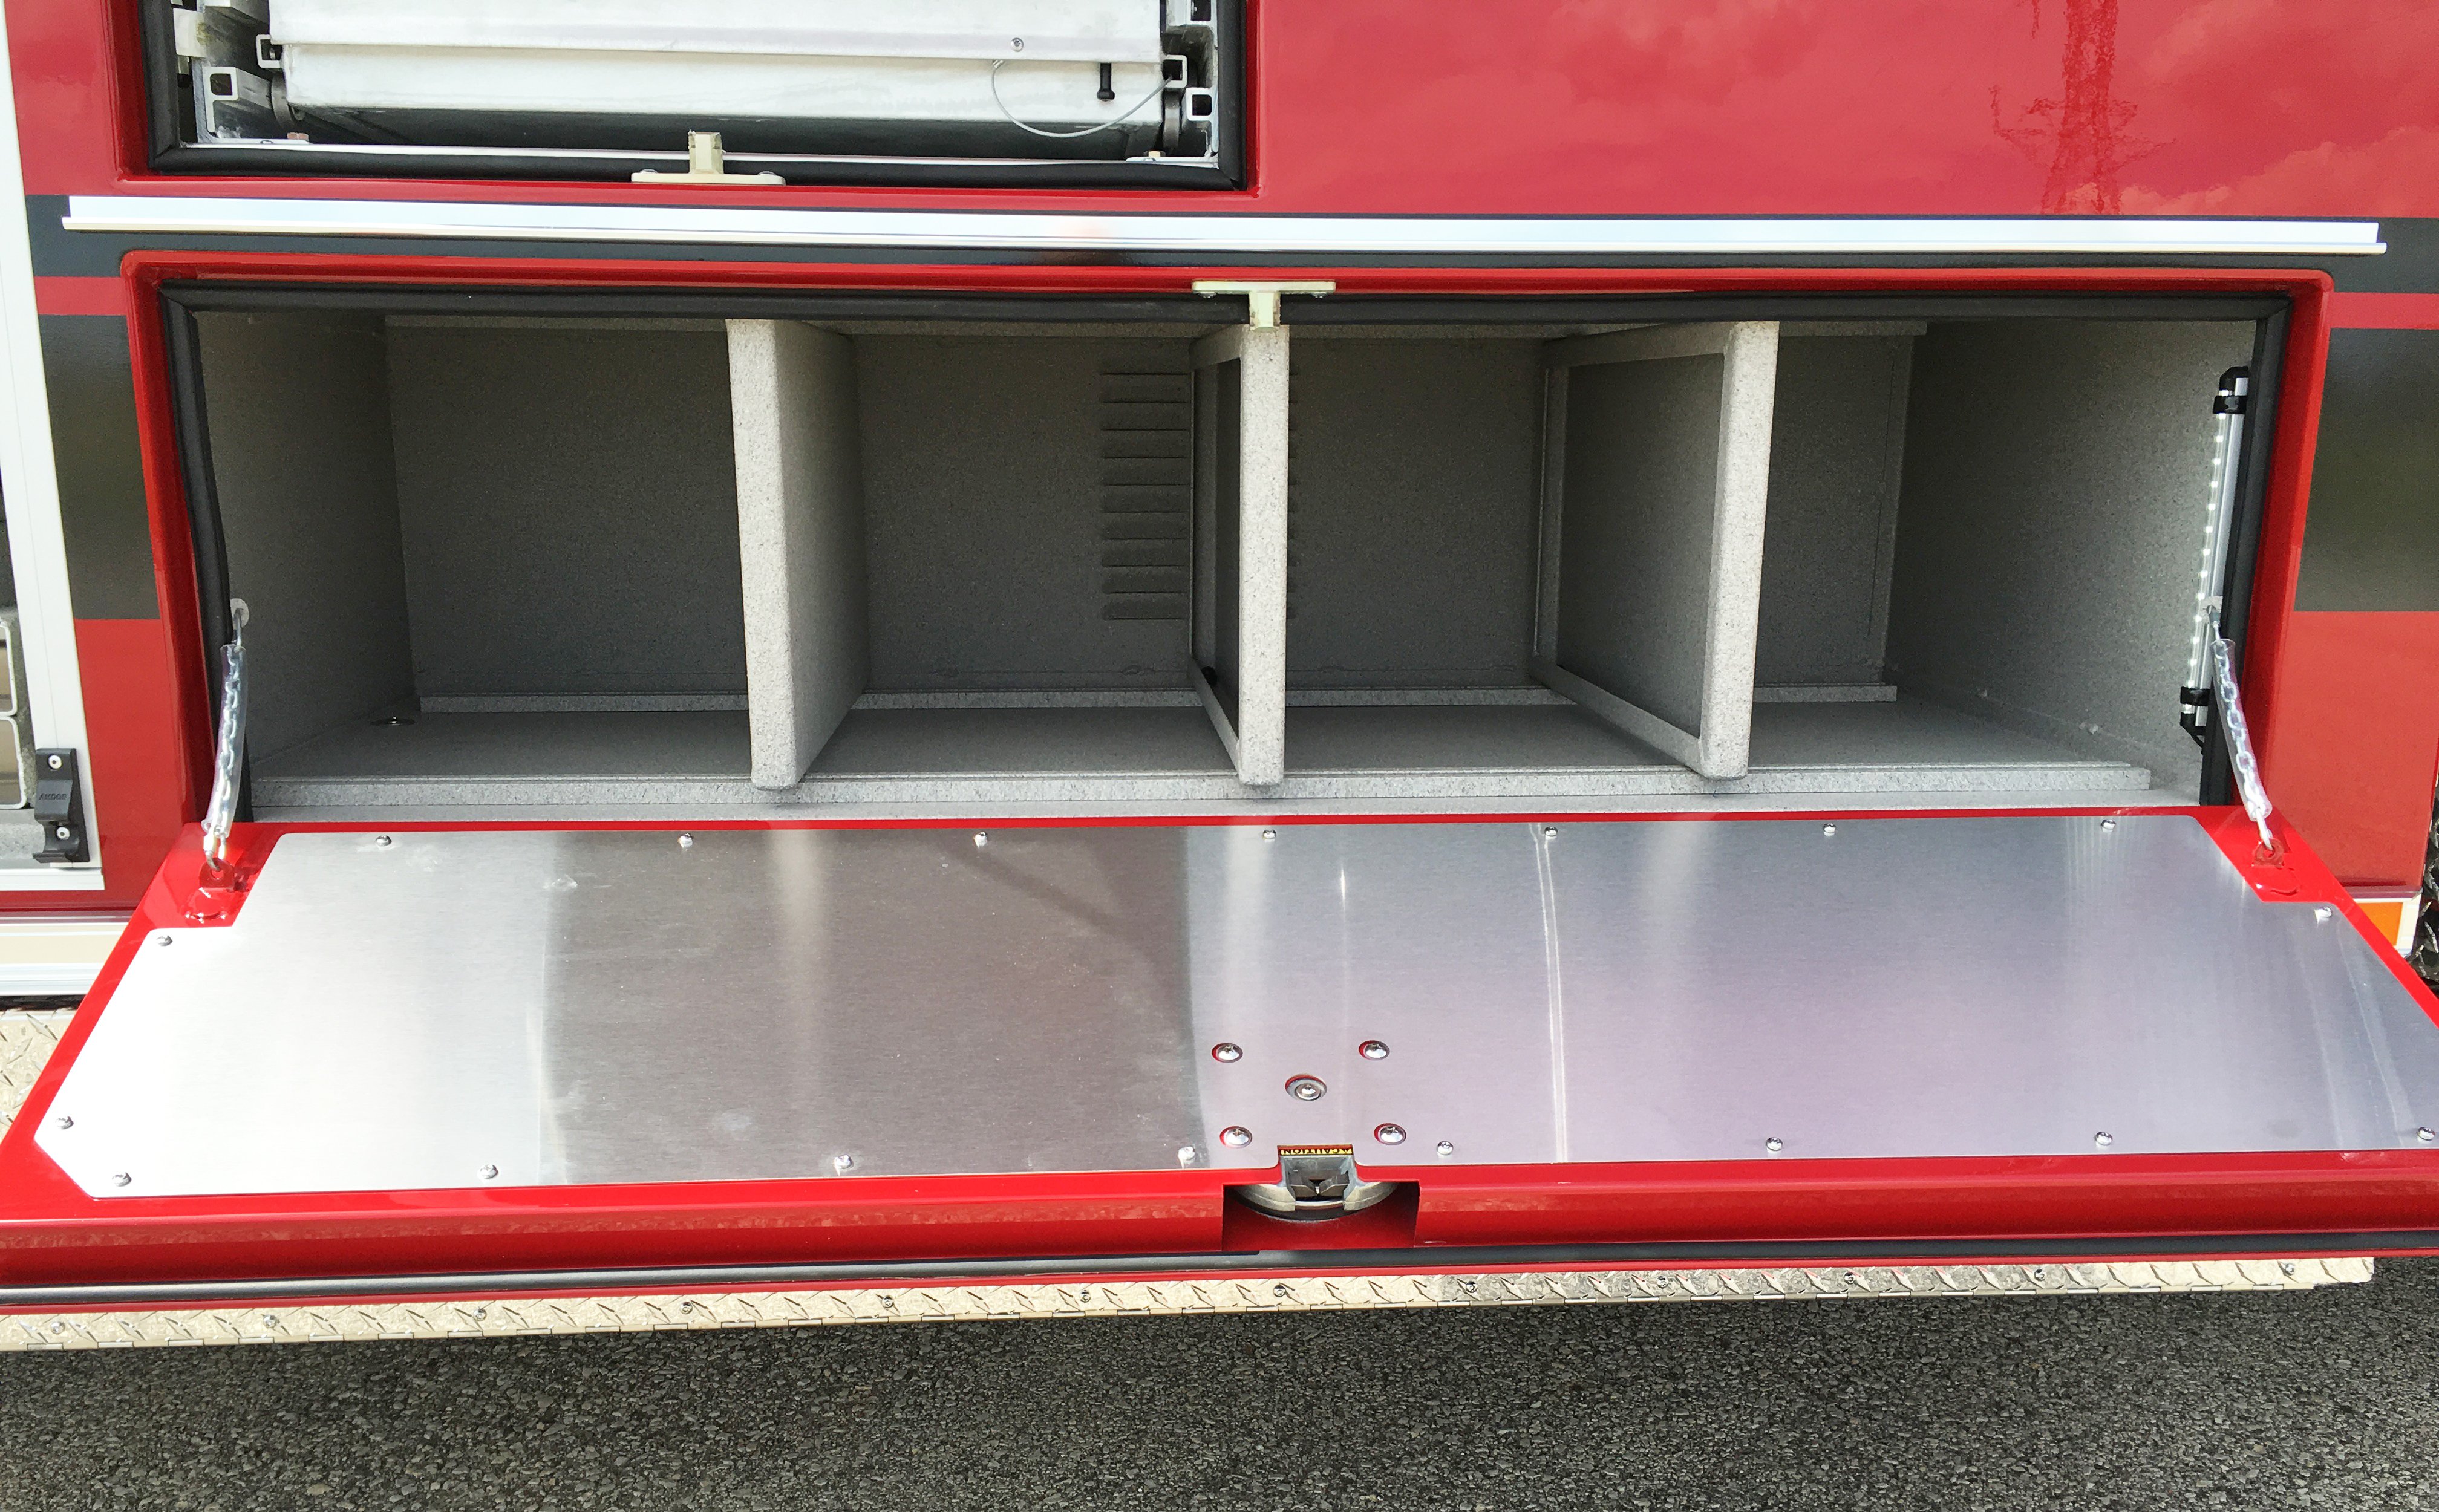 Pierce Combination Rescue Fire Truck Compartmentation